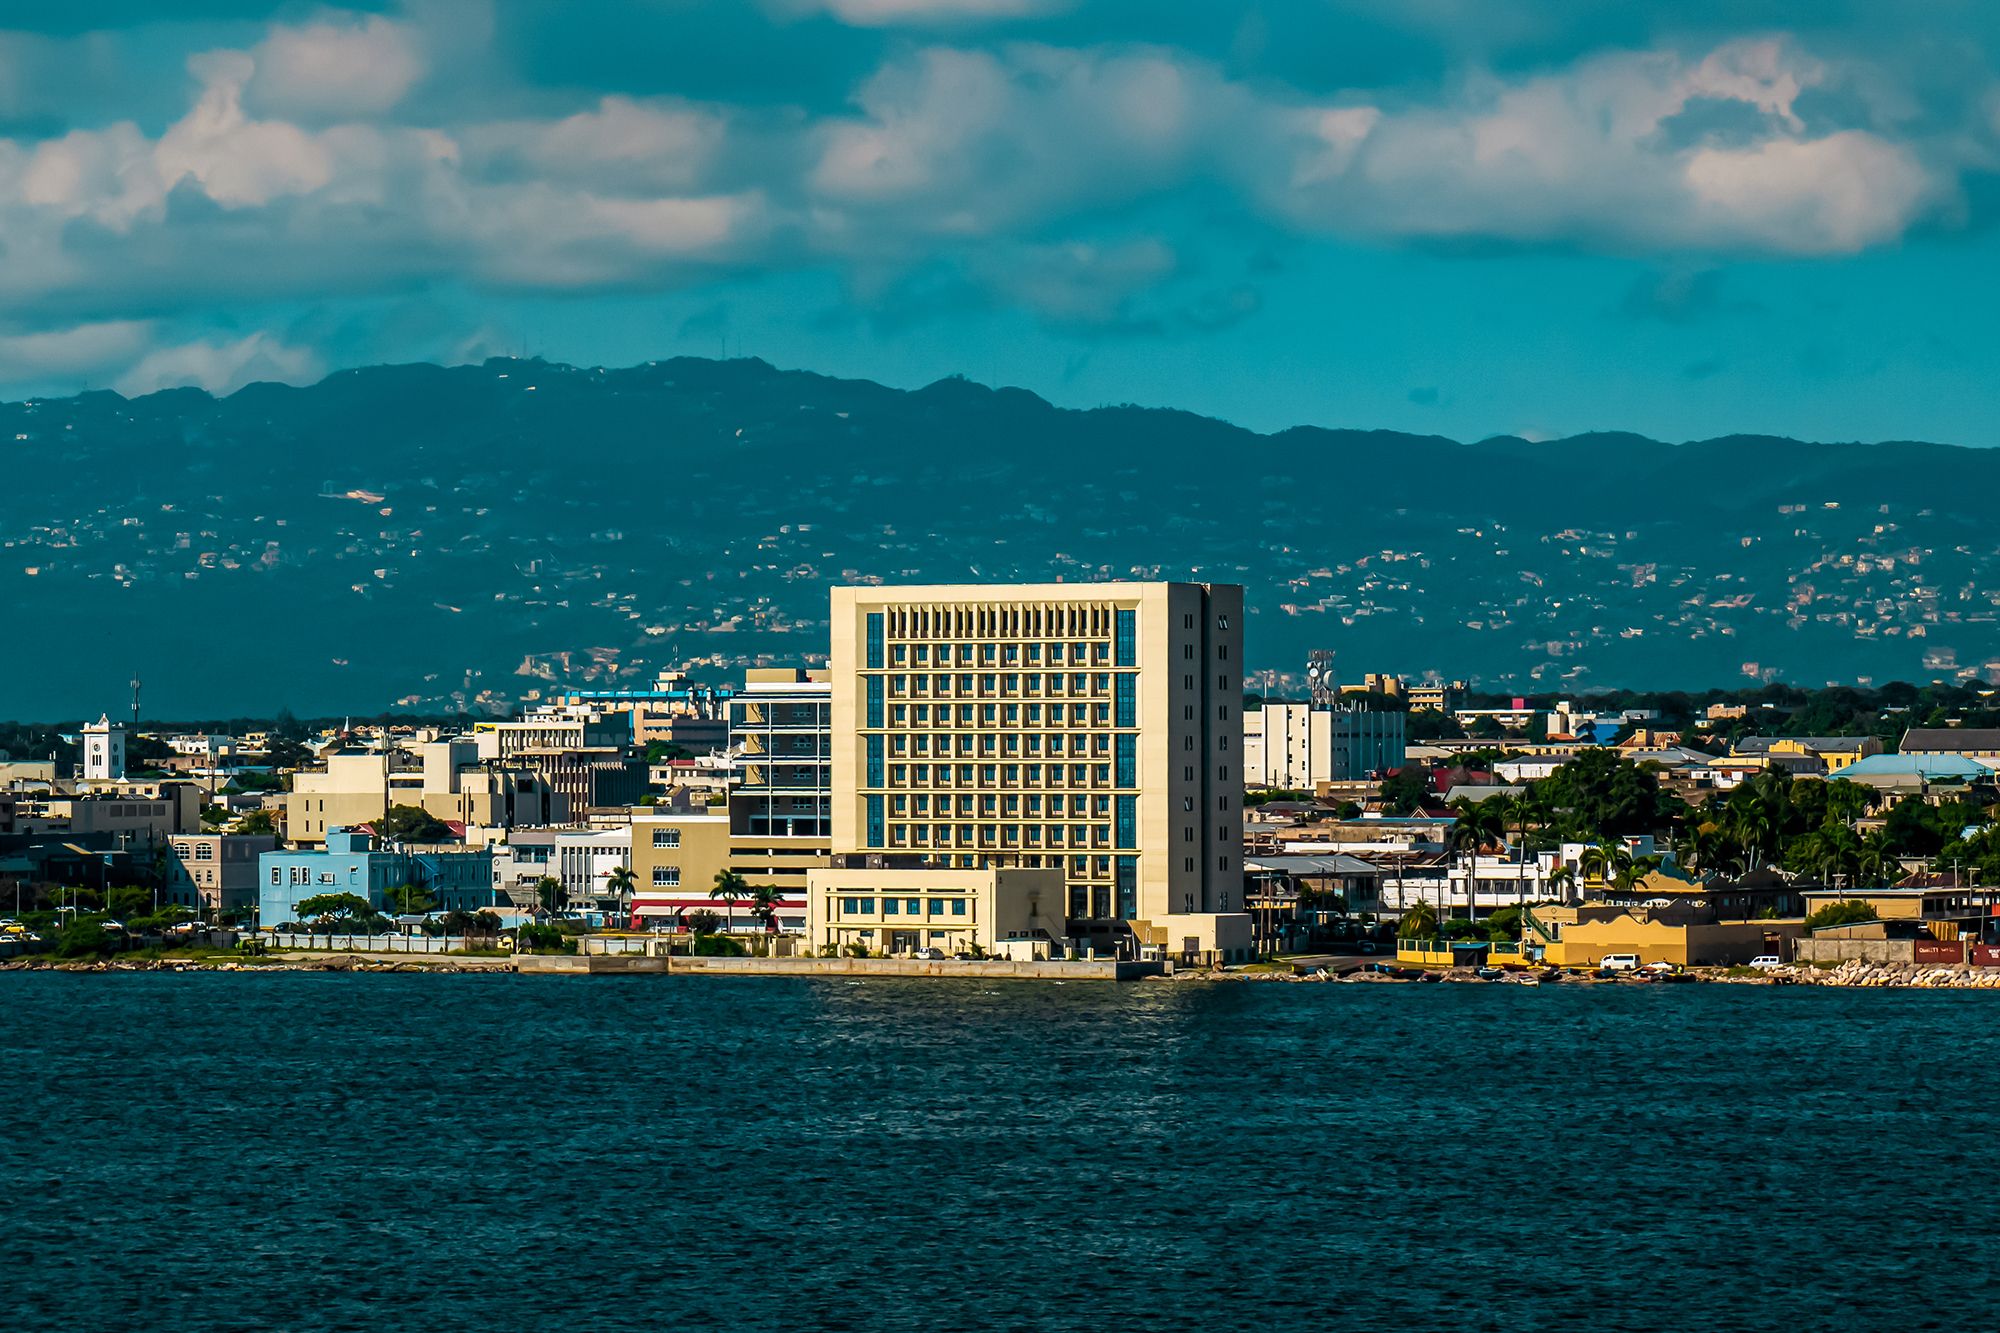 Jamaica Building City Landscape